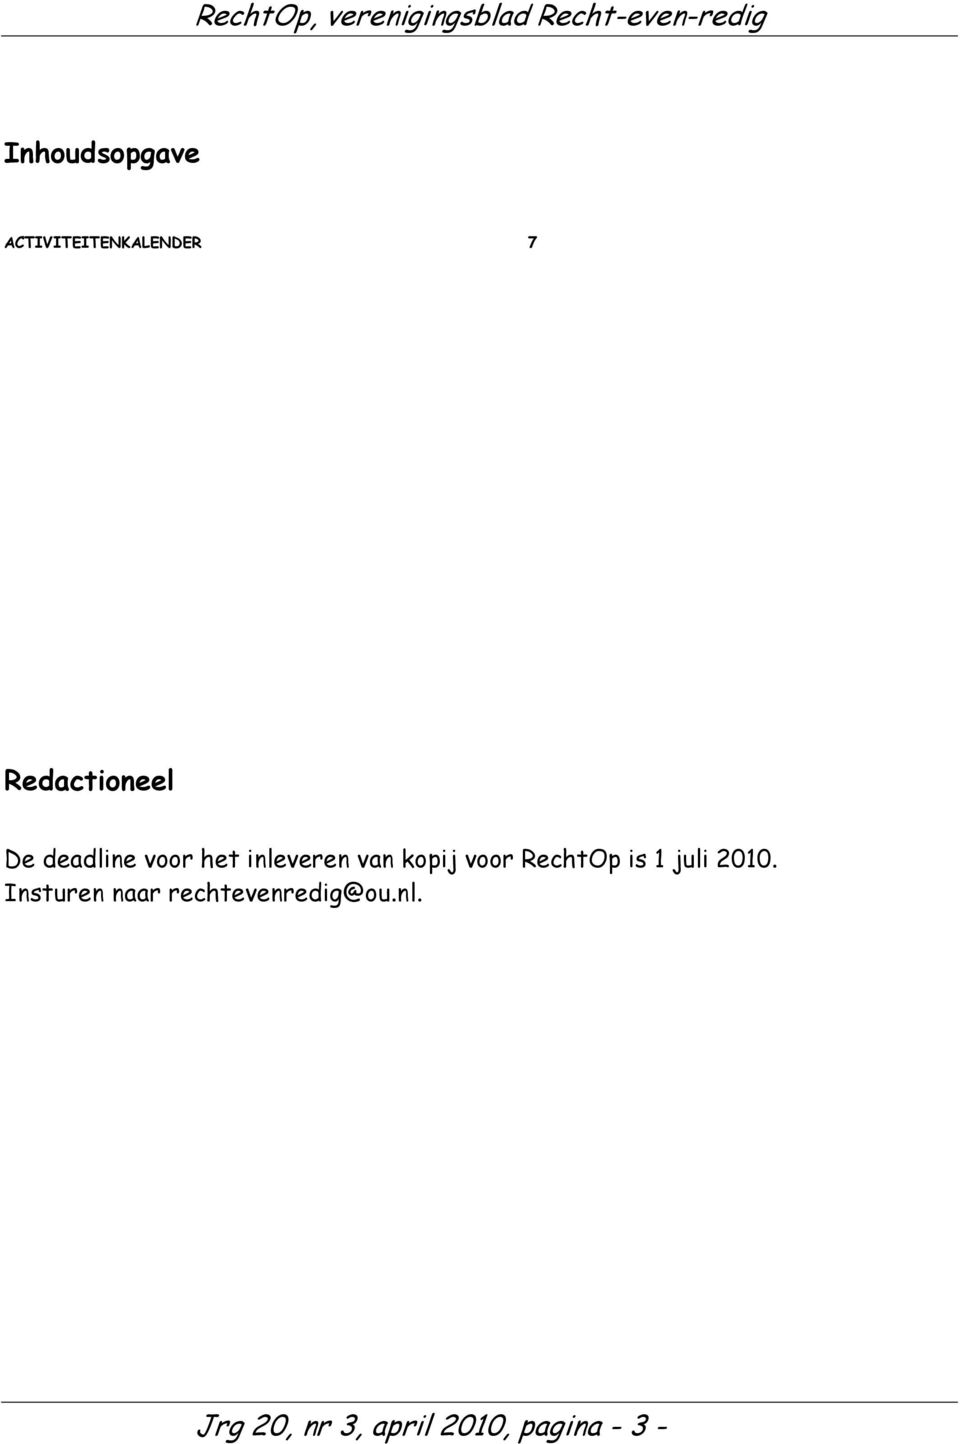 kopij voor RechtOp is 1 juli 2010.